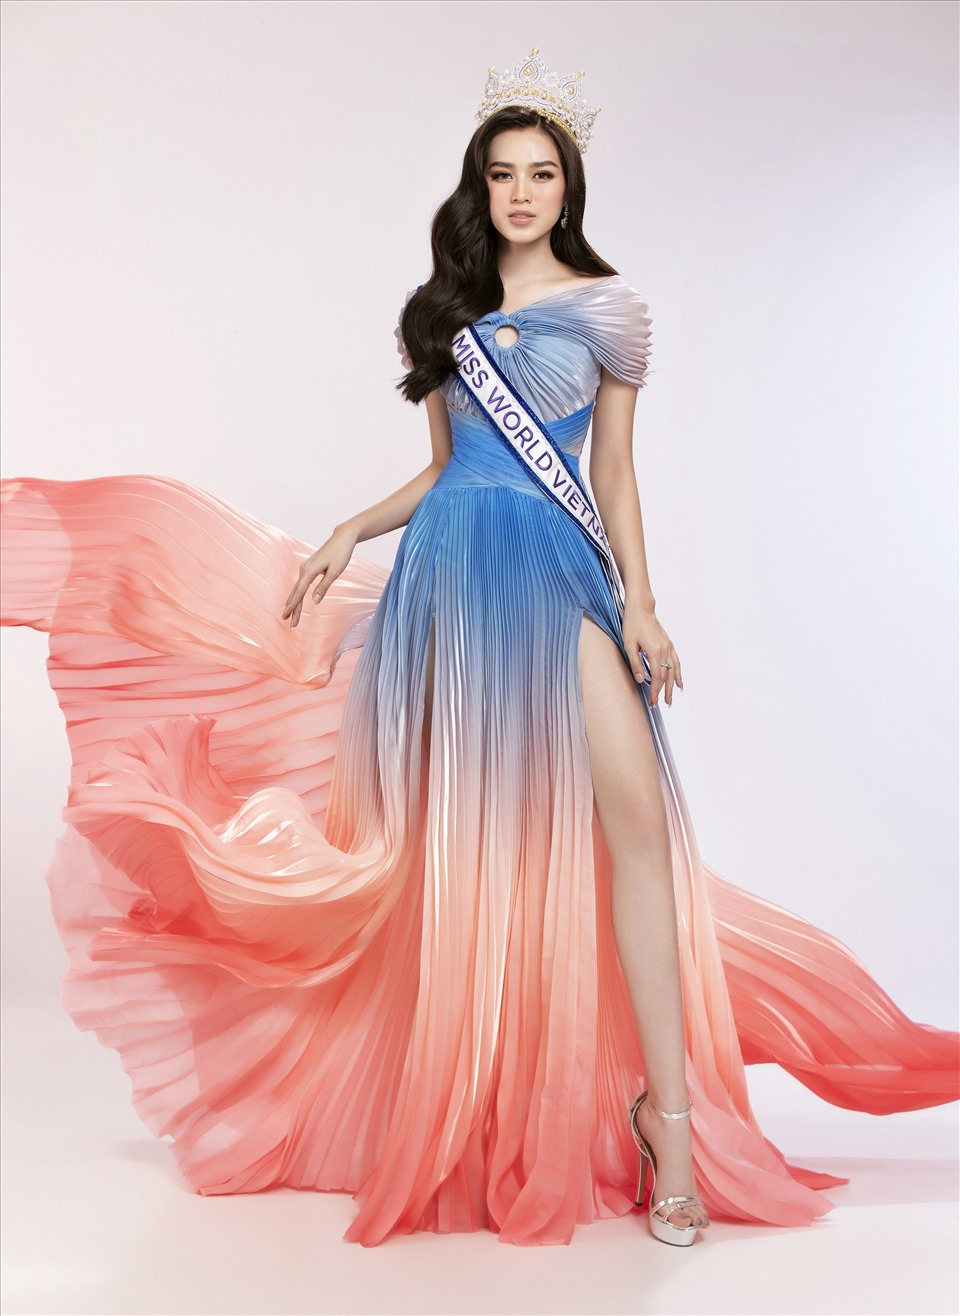 Sau gần 1 năm đăng quang Hoa hậu Việt Nam 2020, Hoa hậu Đỗ Thị Hà liên tục cập nhật những hoạt động tập luyện cũng như thay đổi phong cách để hoàn thiện bản thân trước ngày lên đường chinh chiến Miss World. Ảnh: Lê Thiện Viễn